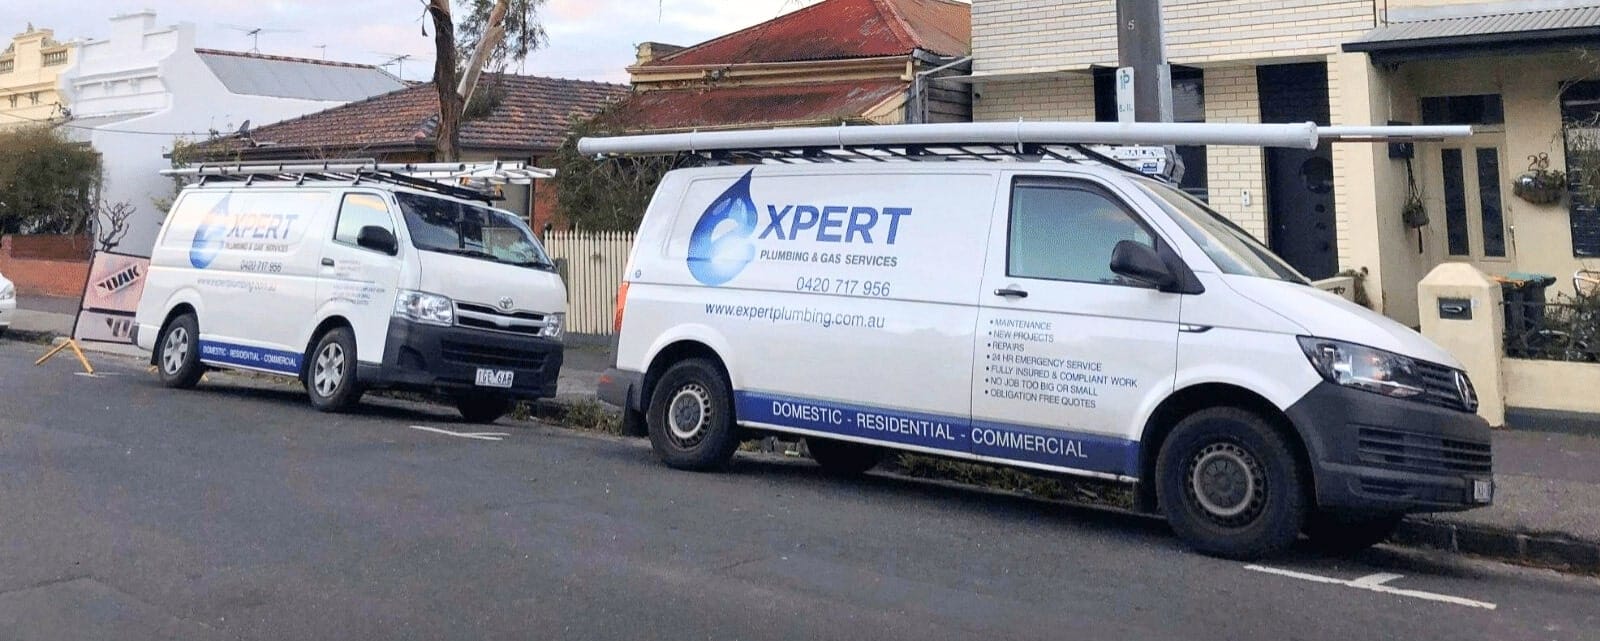 Expert Plumbing vans